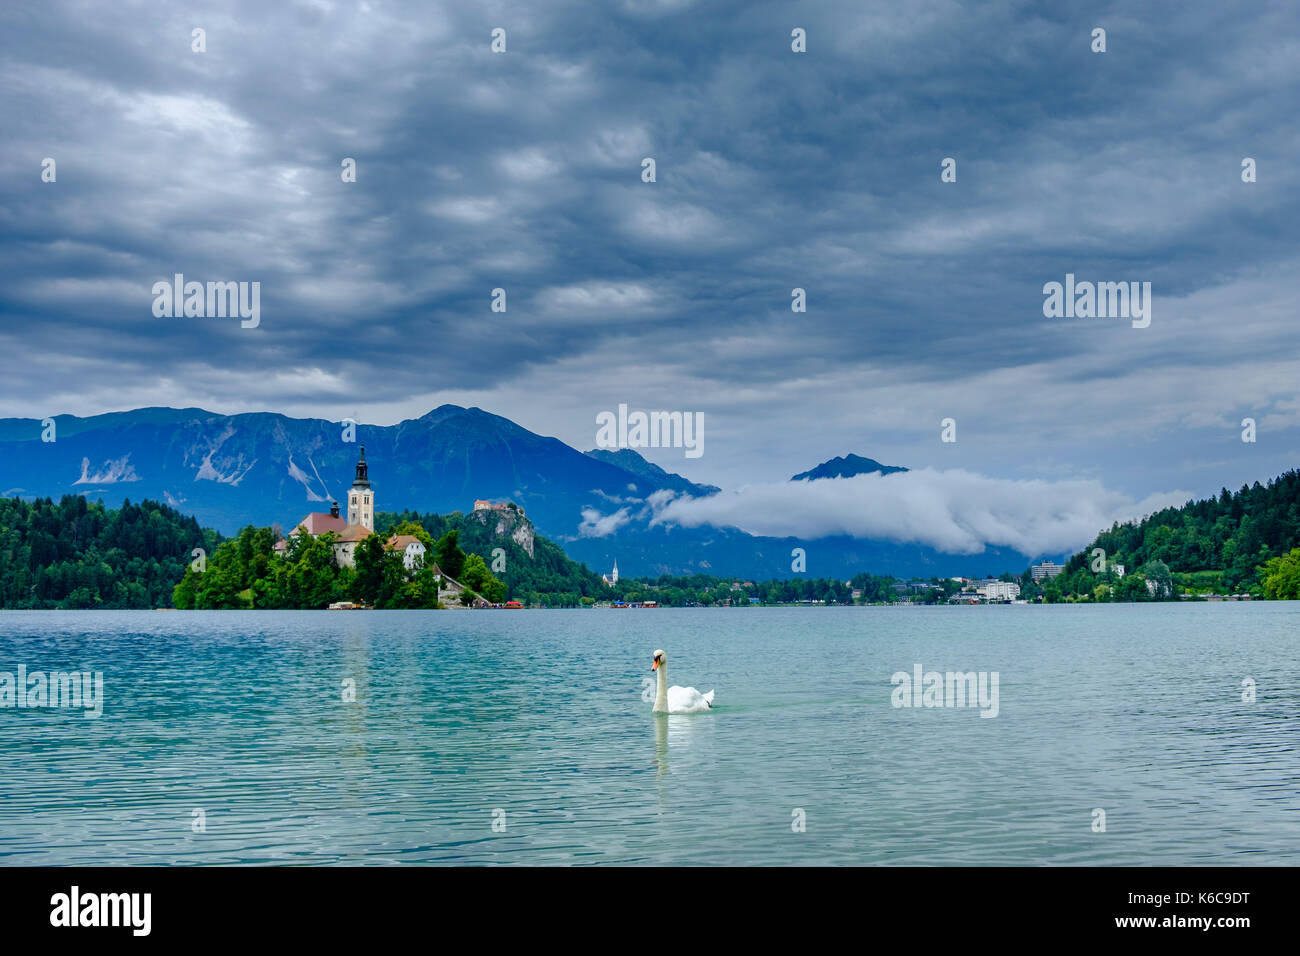 Ein Schwan wird die Insel, blejski otok, mit der Wallfahrtskirche zu Maria Himmelfahrt über See gesehen dedizierte Bled, Blejsko Jezero Stockfoto